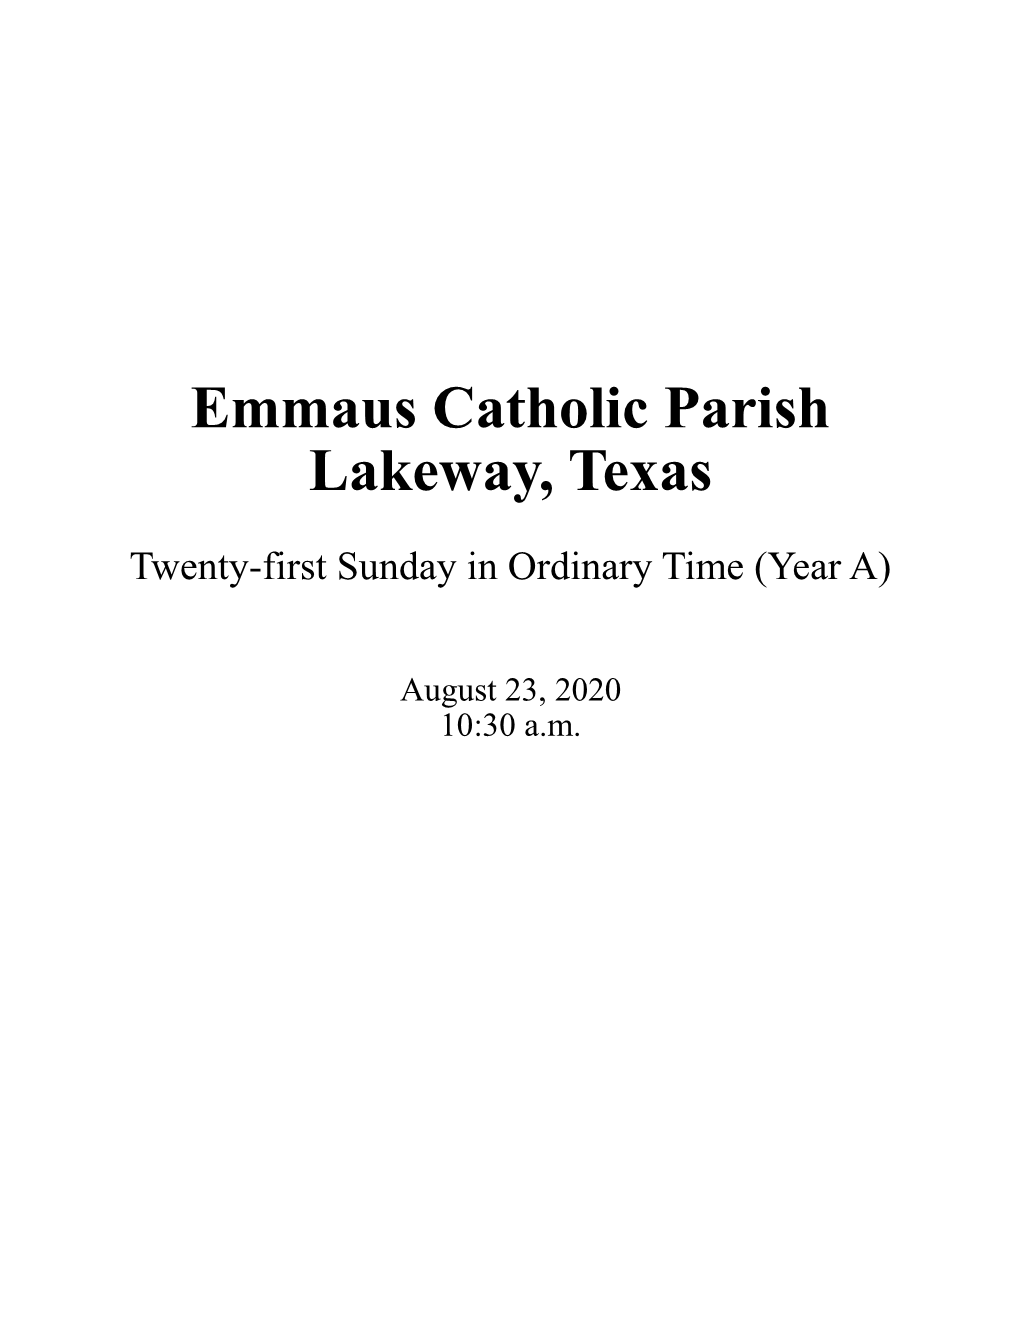 Emmaus Catholic Parish Lakeway, Texas